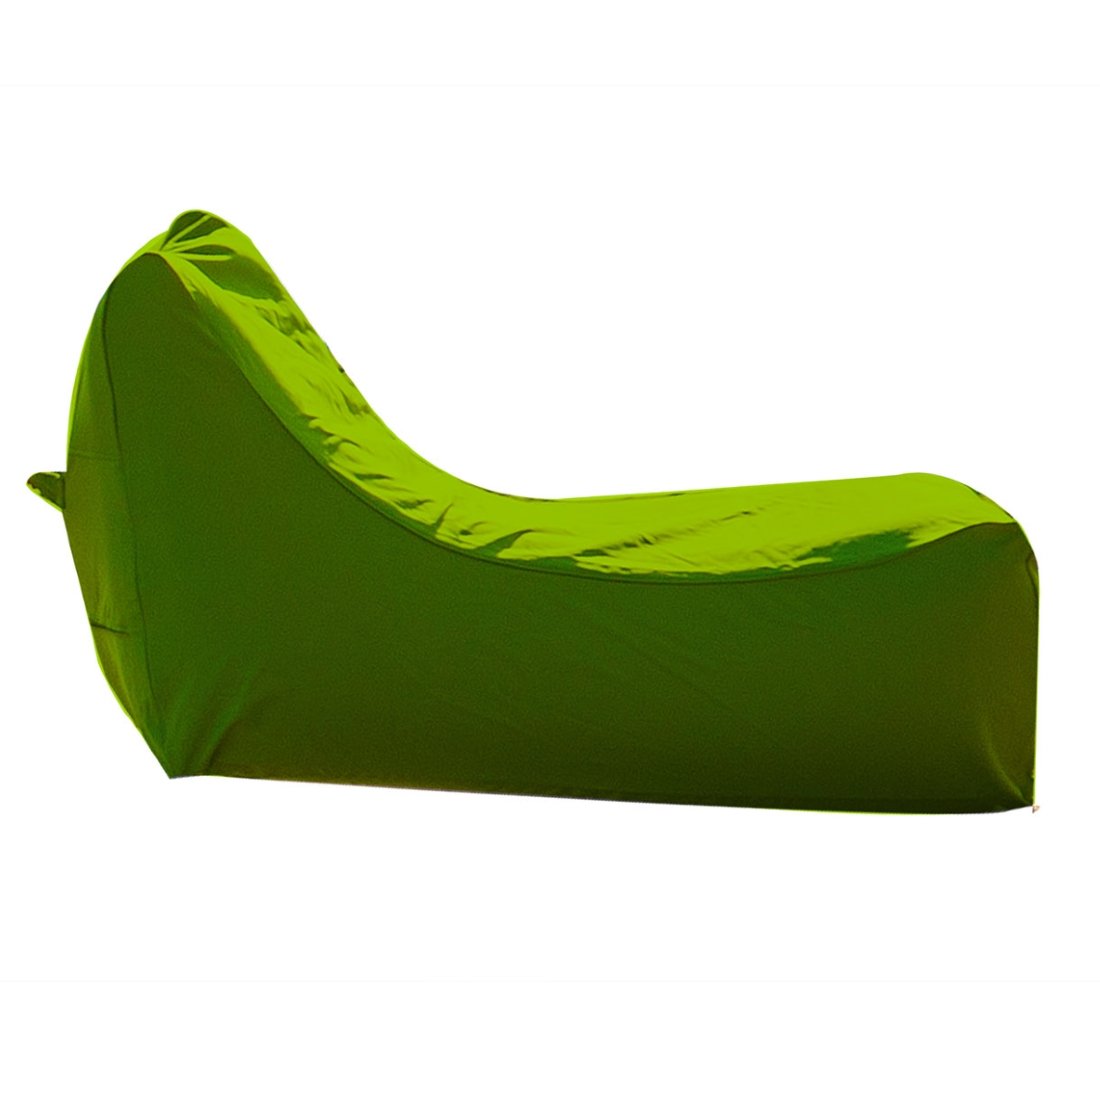 Chaise longue de piscine premium verte - Wink'Air Nap